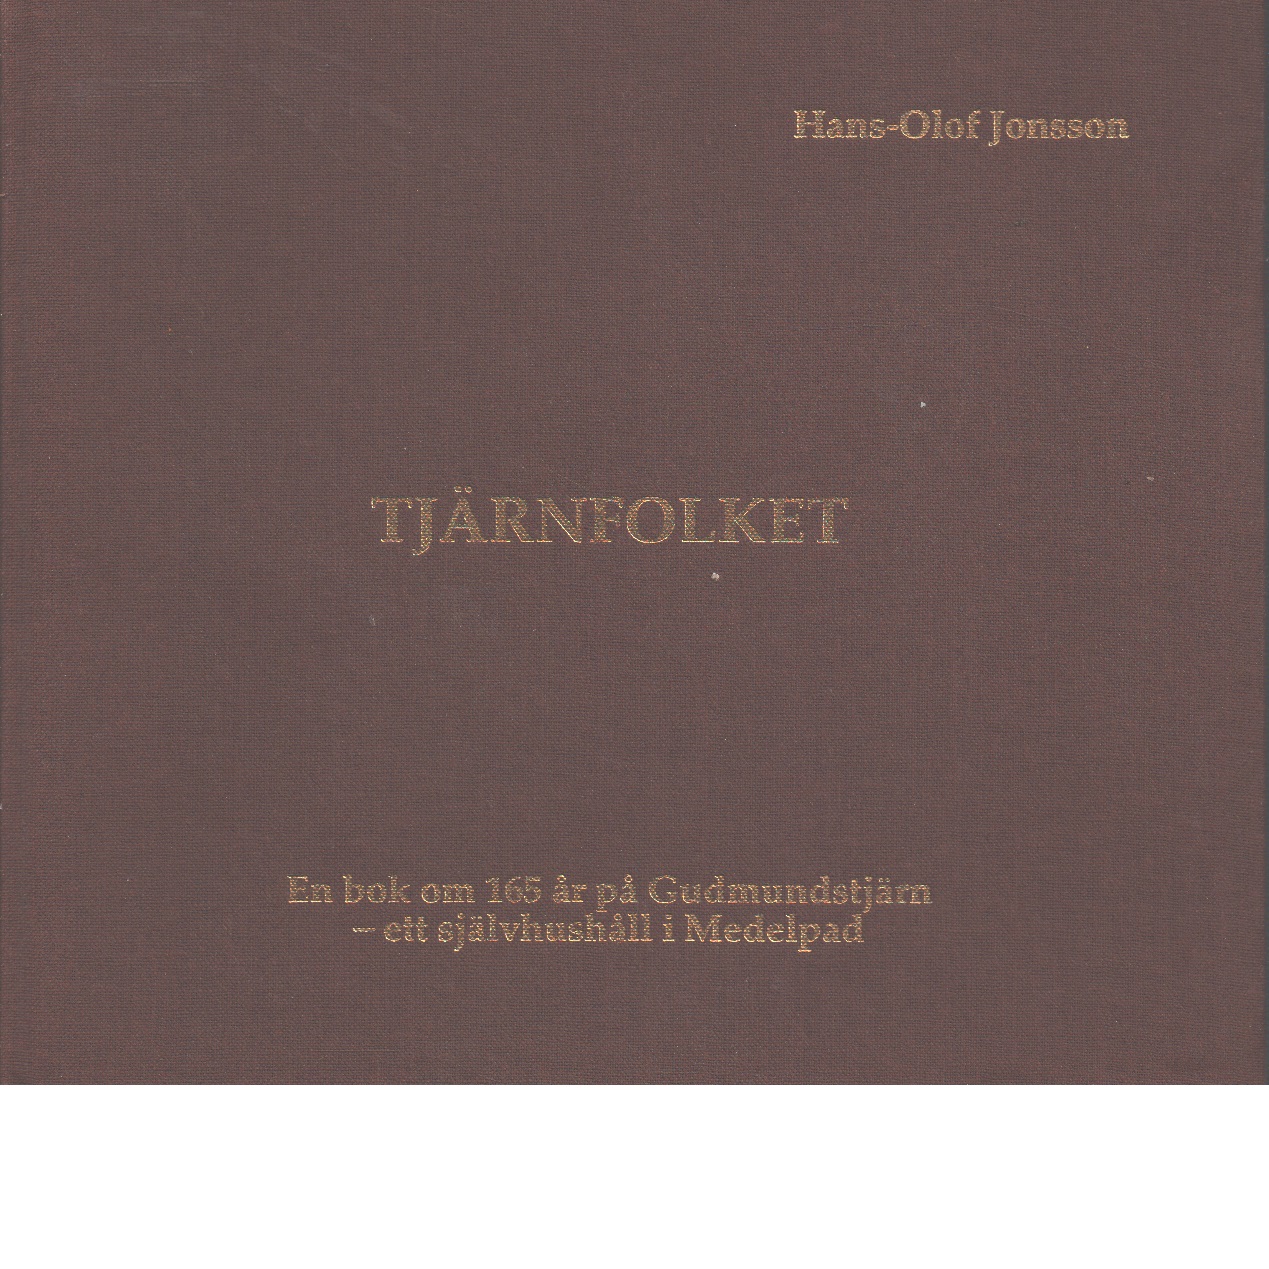 Tjärnfolket : en bok om 165 år på Gudmundstjärn - ett självhushåll i Medelpad - Jonsson, Hans-Olof